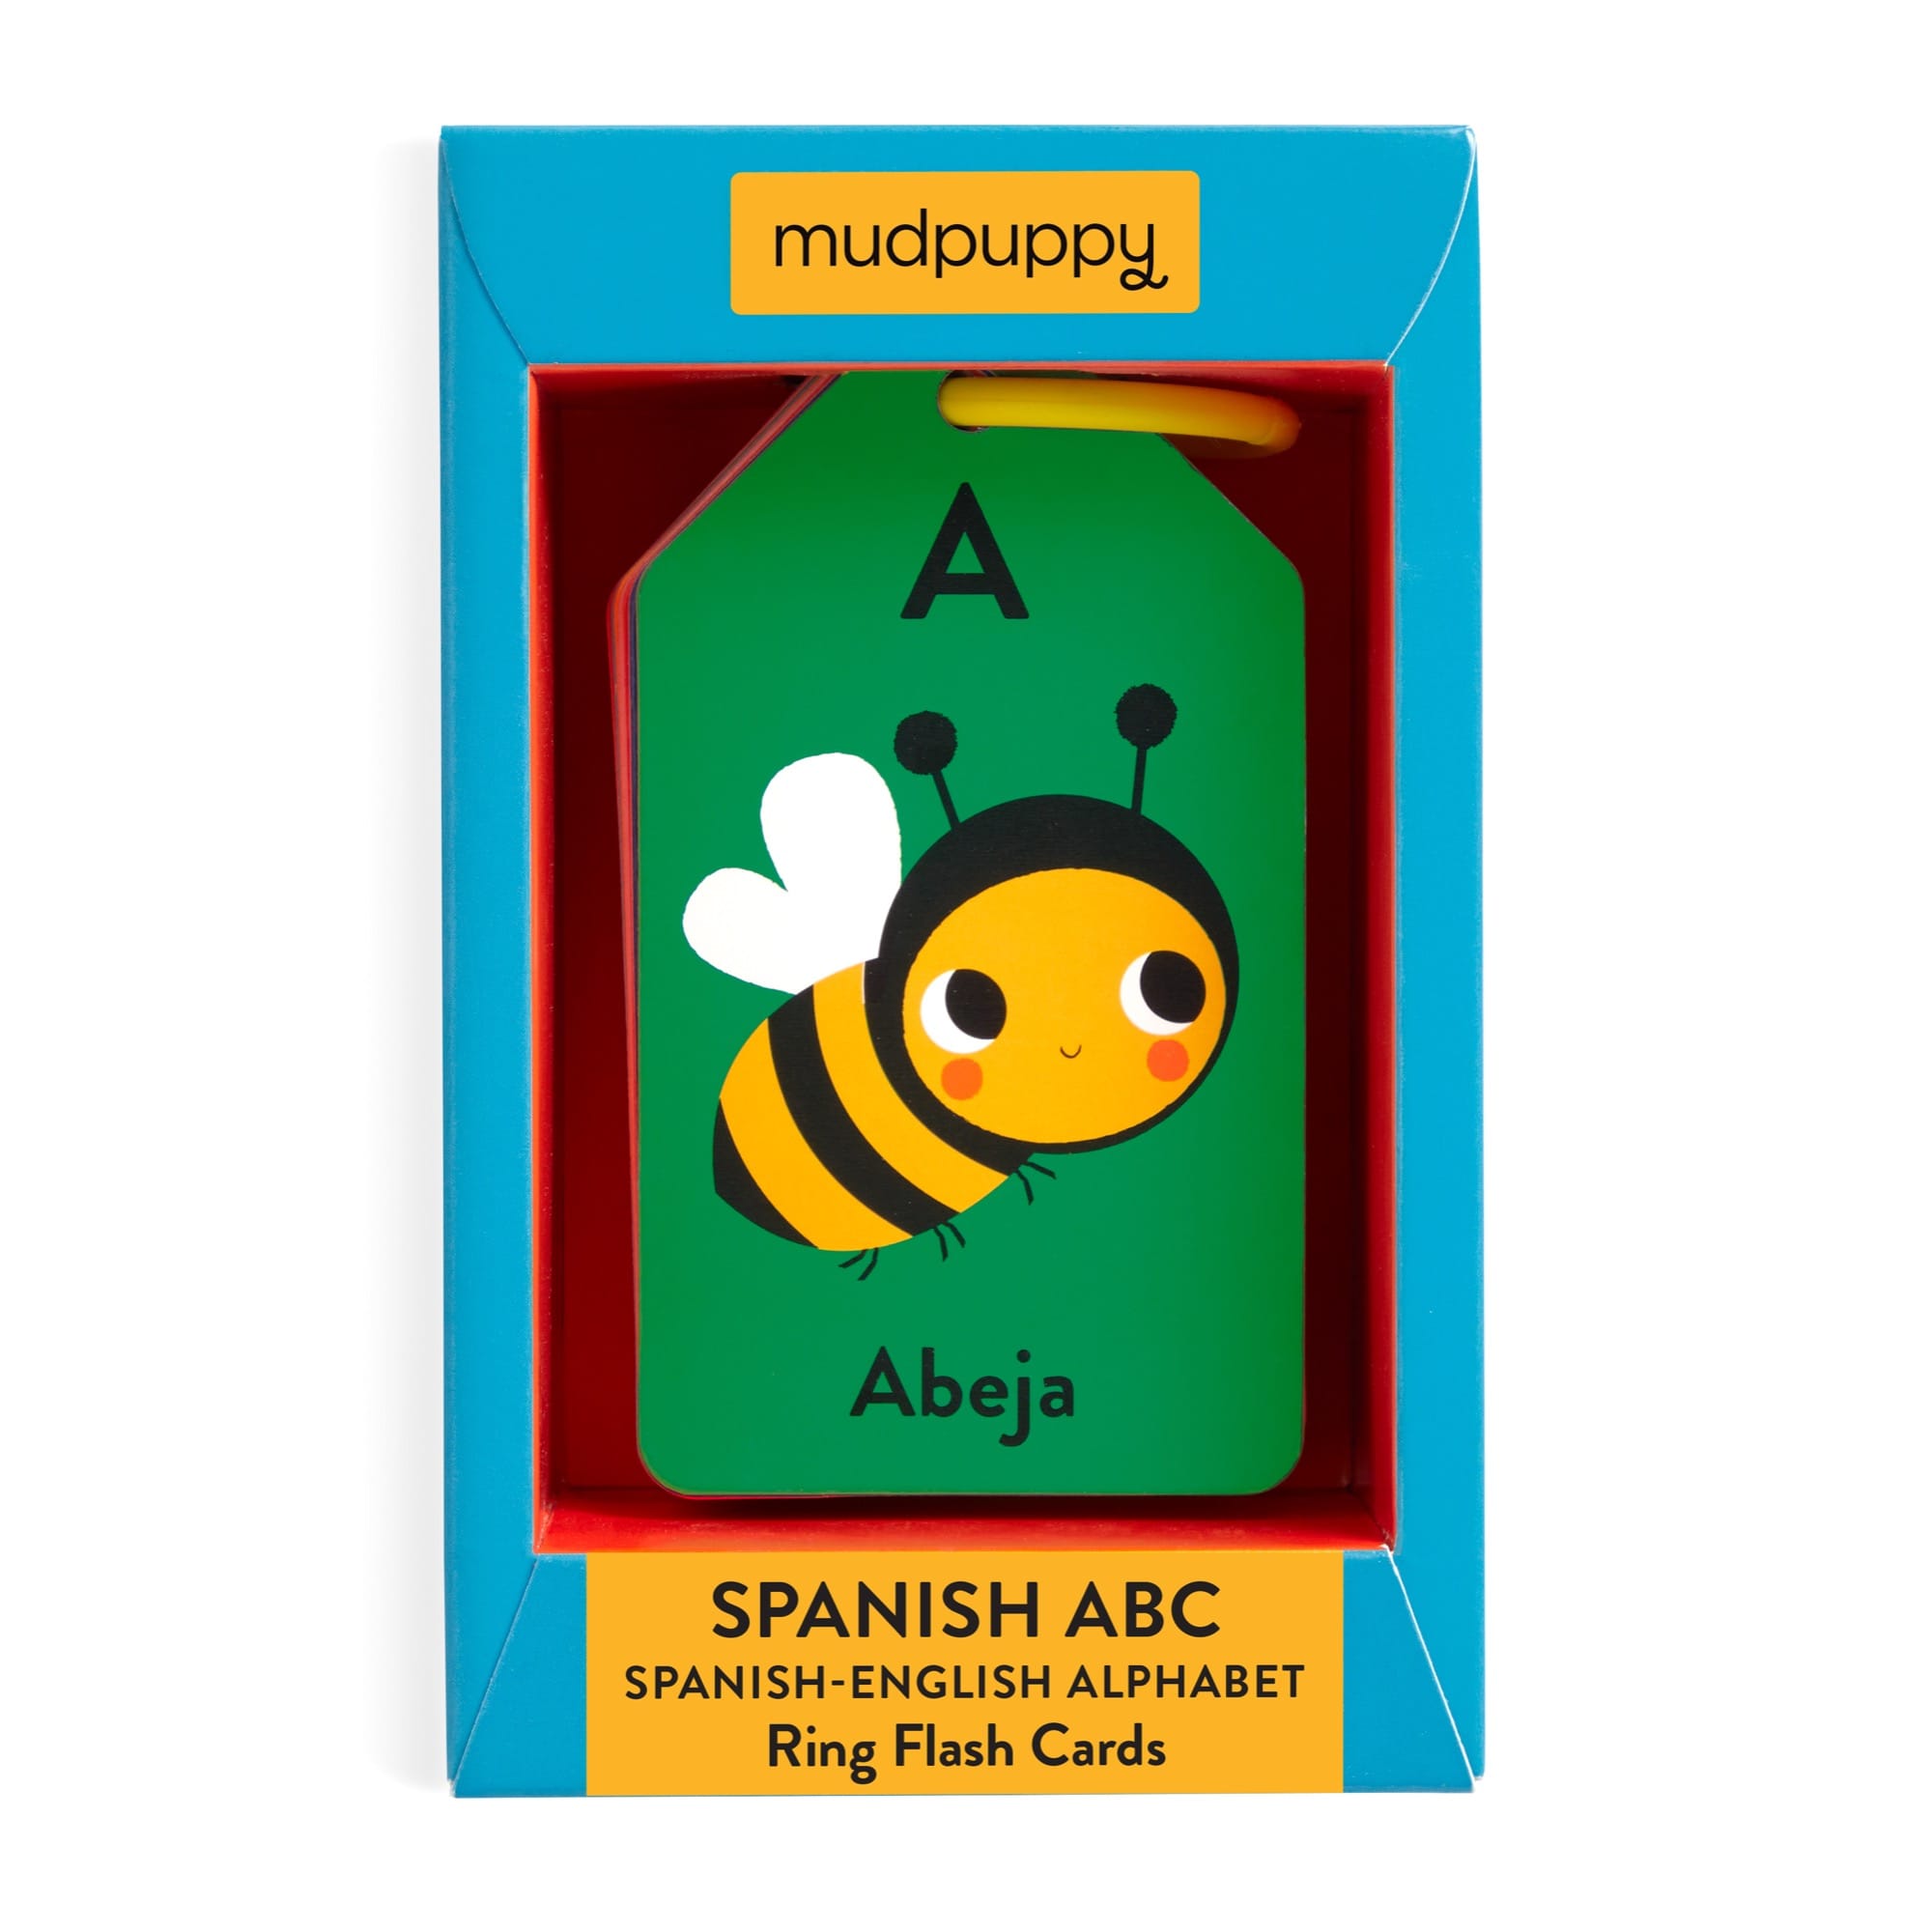 Spanish-English ABC Ring Flash Cards – Mudpuppy